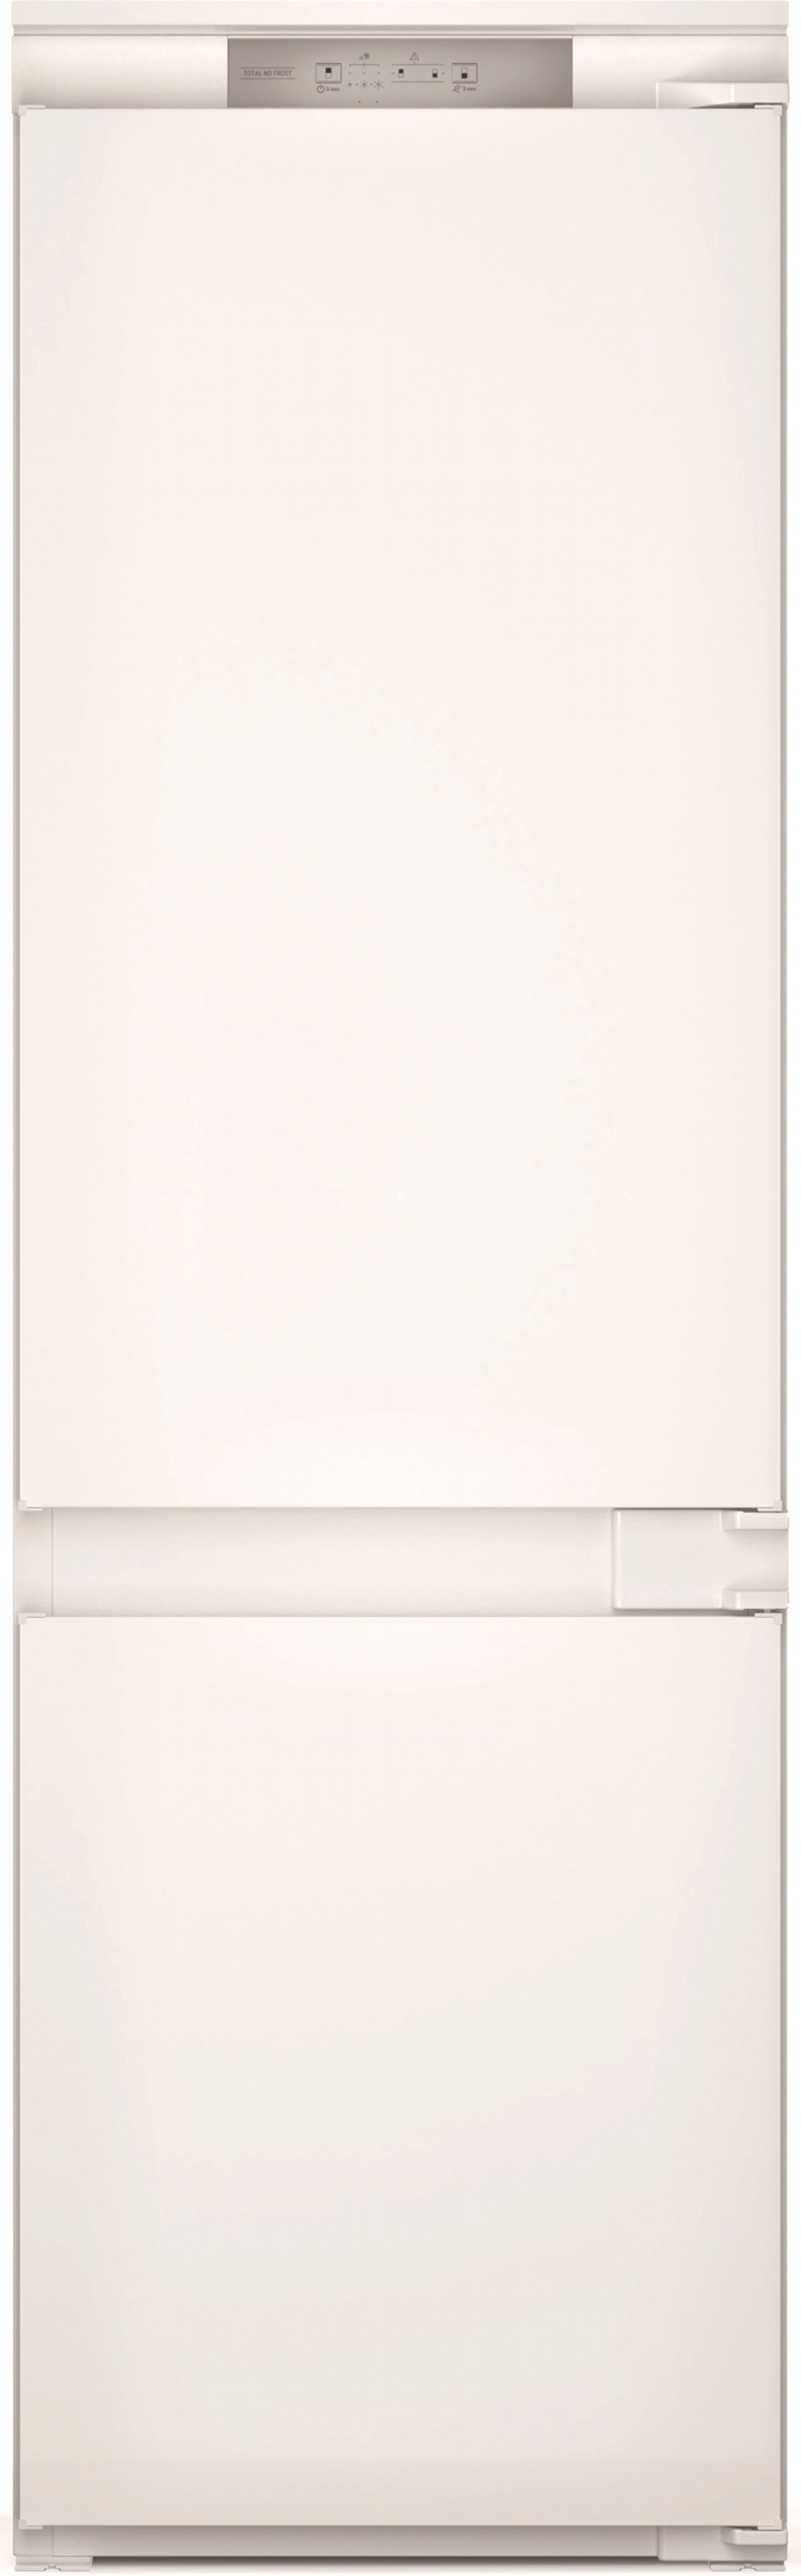 Холодильник Hotpoint Ariston HAC18T311 в интернет-магазине, главное фото